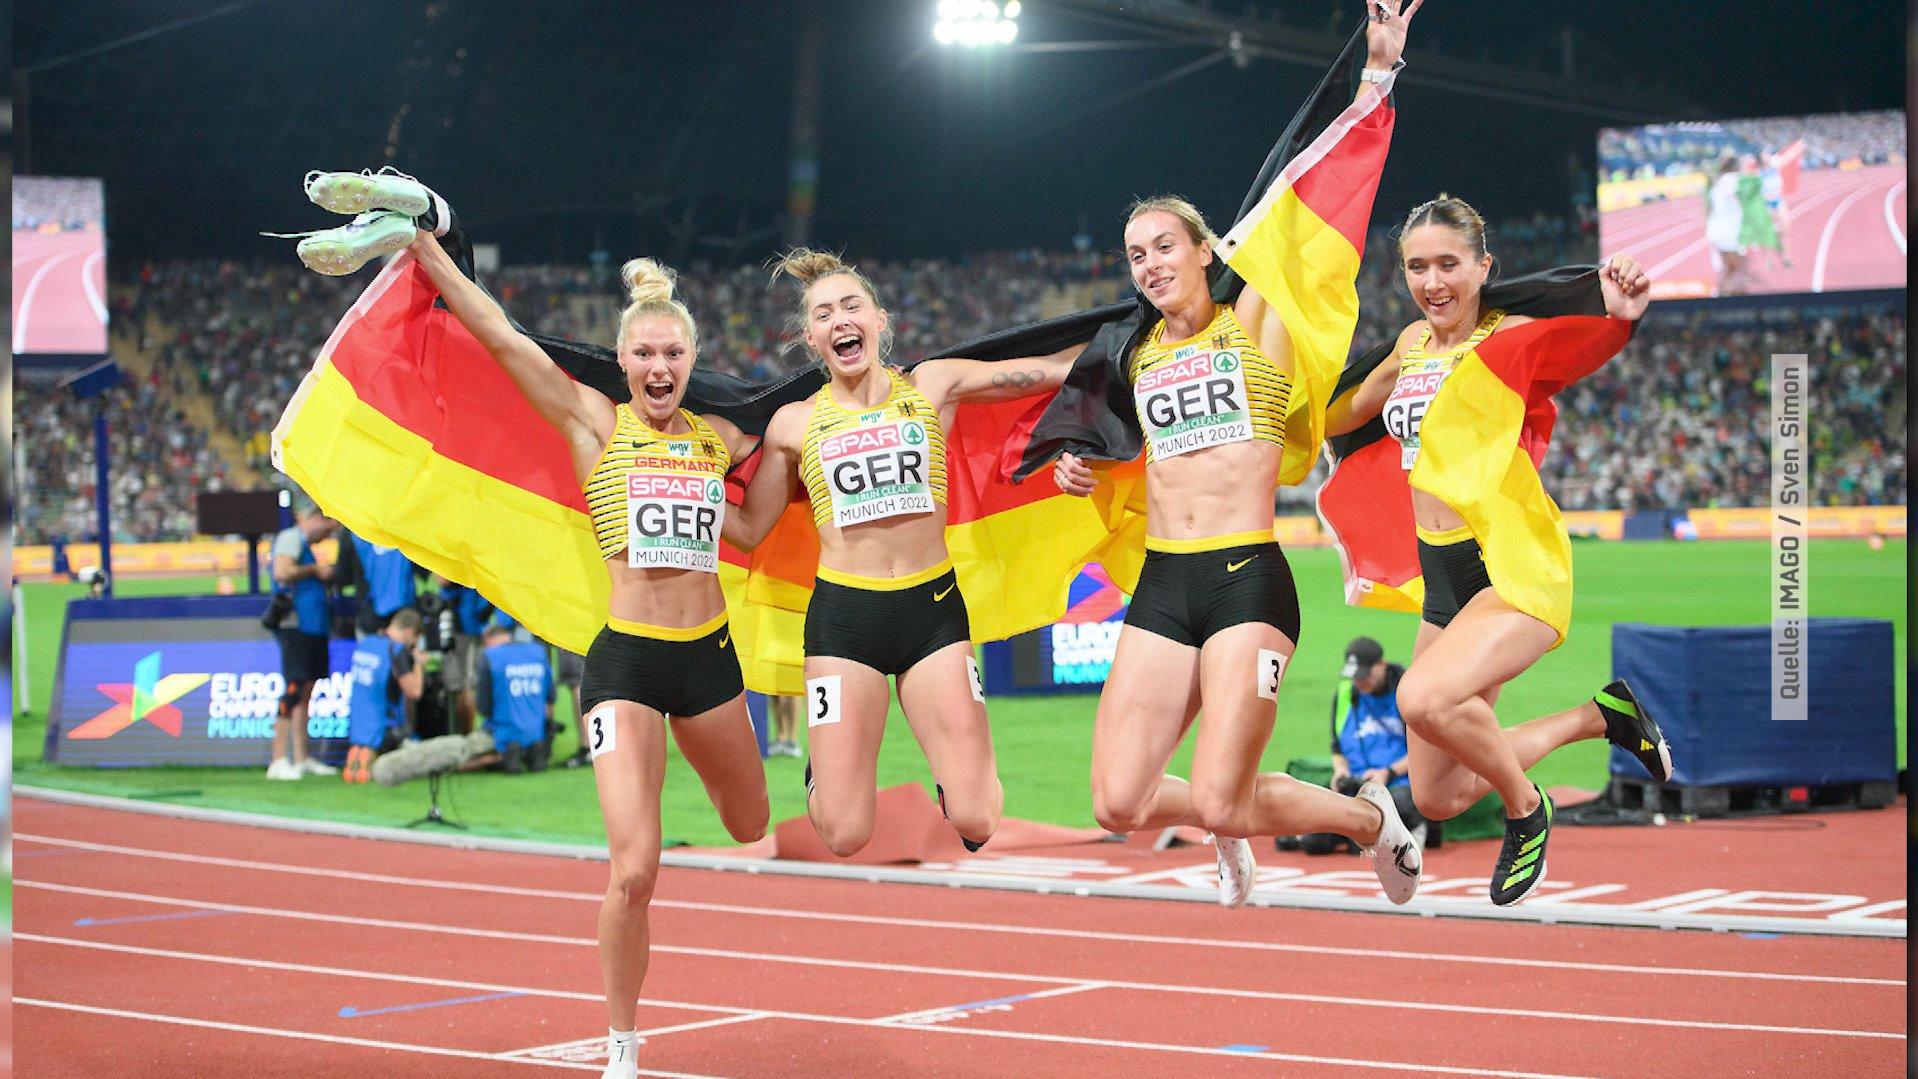 Lisa Mayer holt gemeinsam mit der Deutschen Sprint-Staffel die Goldmedaille in der Leichtathletik-EM in München.